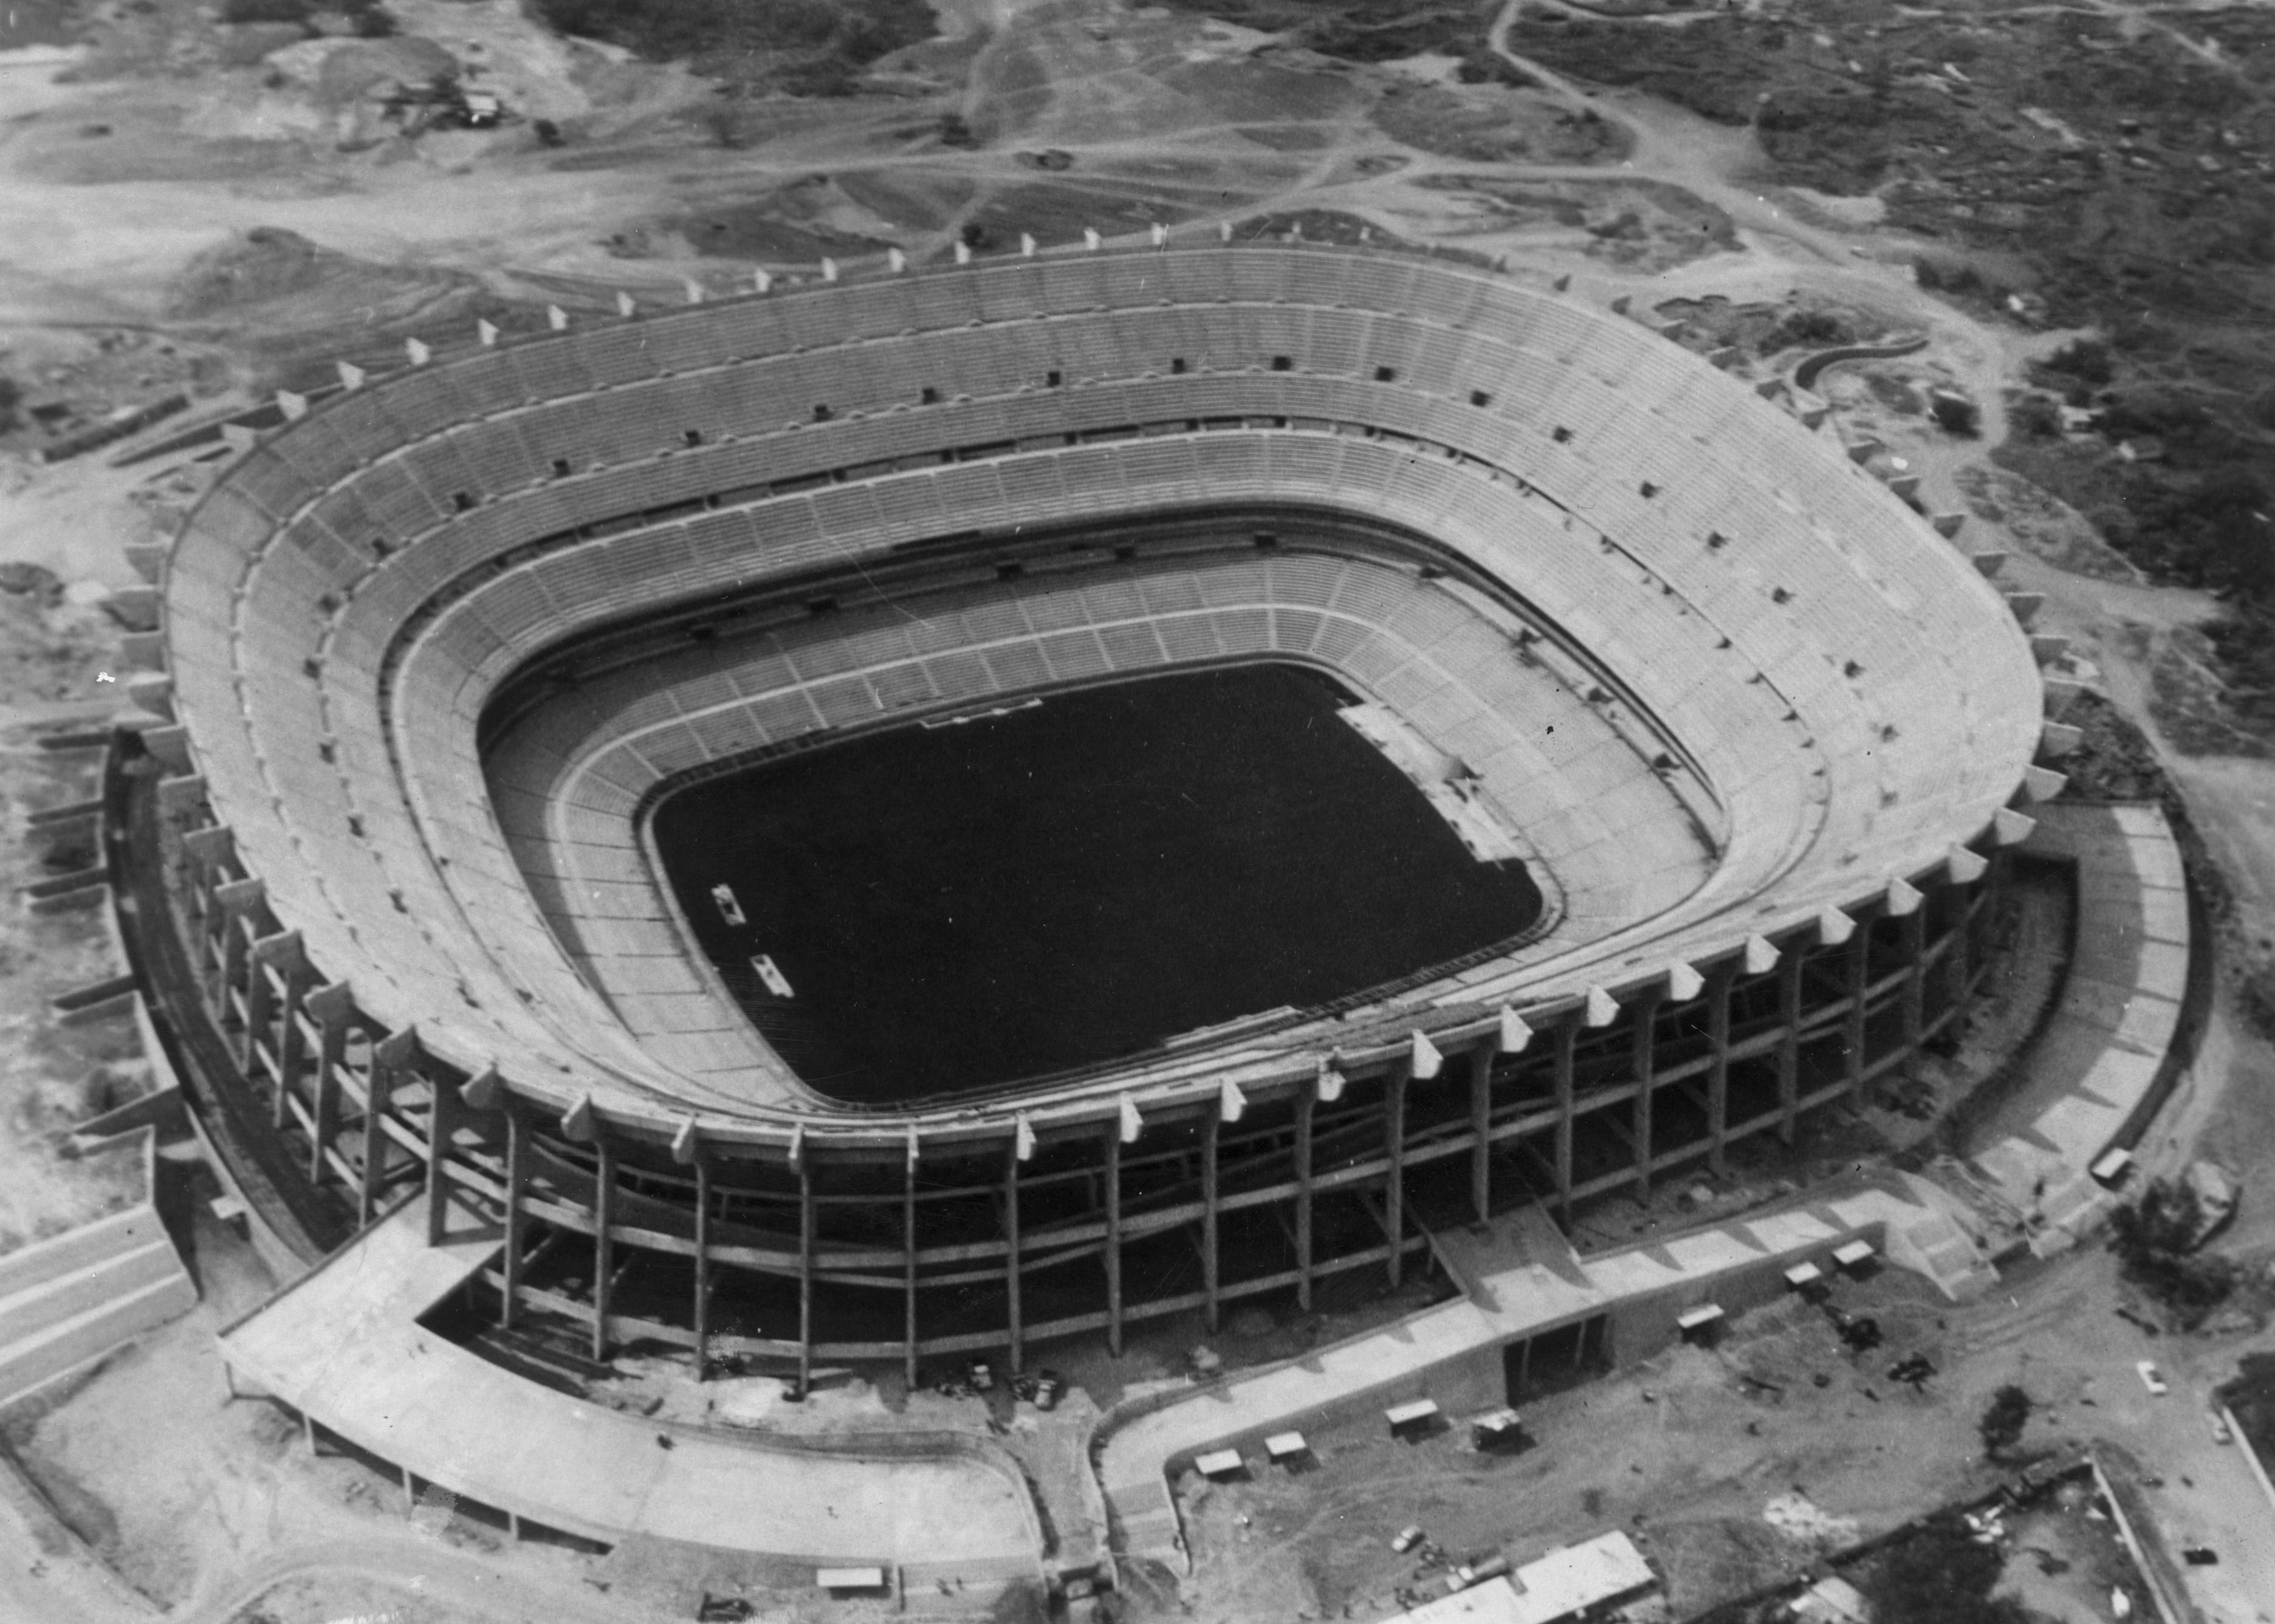 Lo stadio Azteca di Città del Messico, costruito nel 1966 per ospitare il torneo olimpico di calcio, che diventa negli anni teatro di grandi eventi sportivi